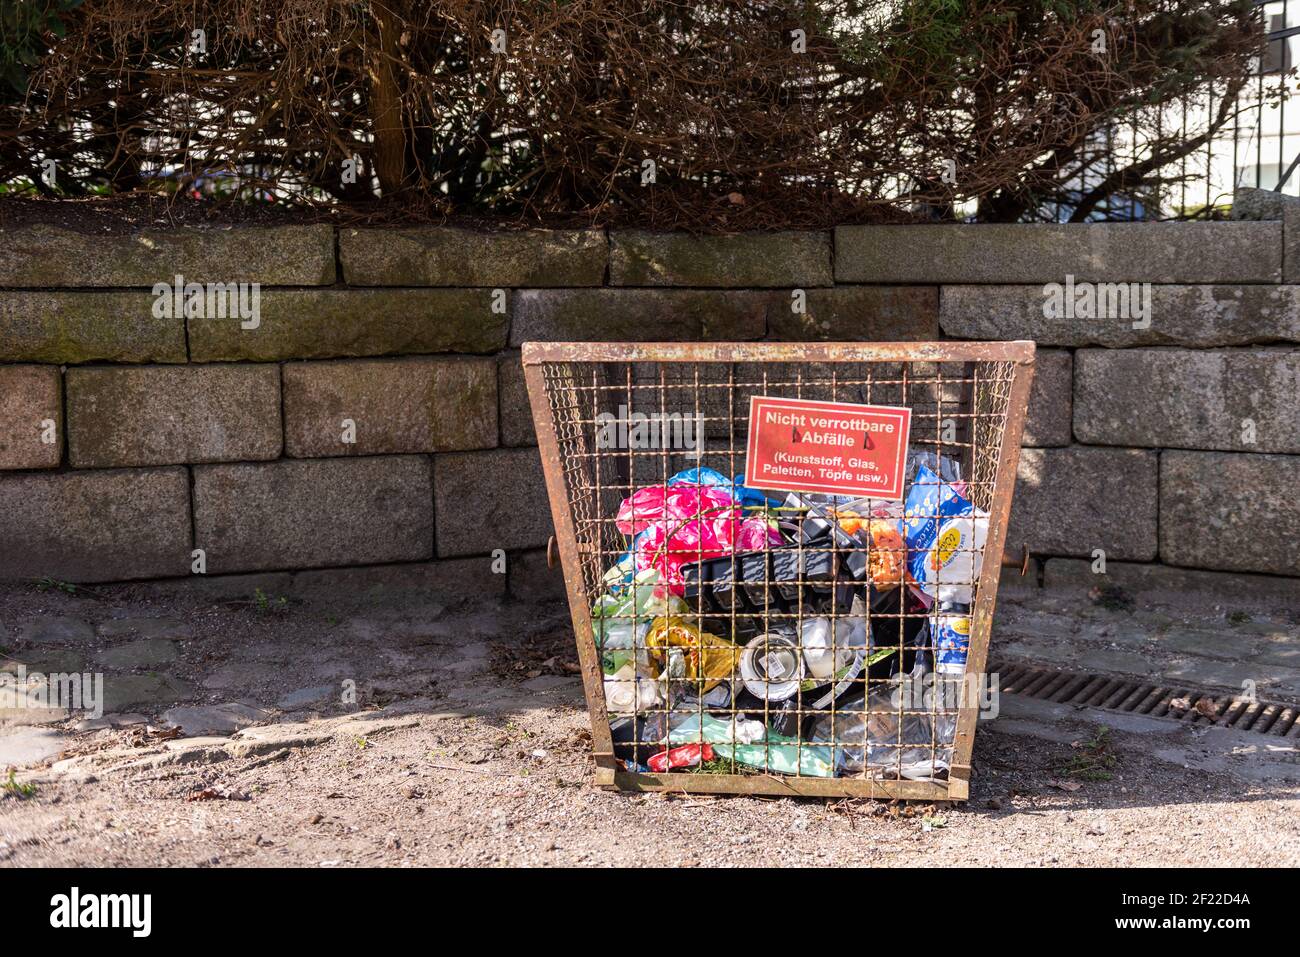 Müllvermeidung in der Öffentlichkeit ist ein Ziel, das man nicht aus den Augen verlieren darf Foto Stock